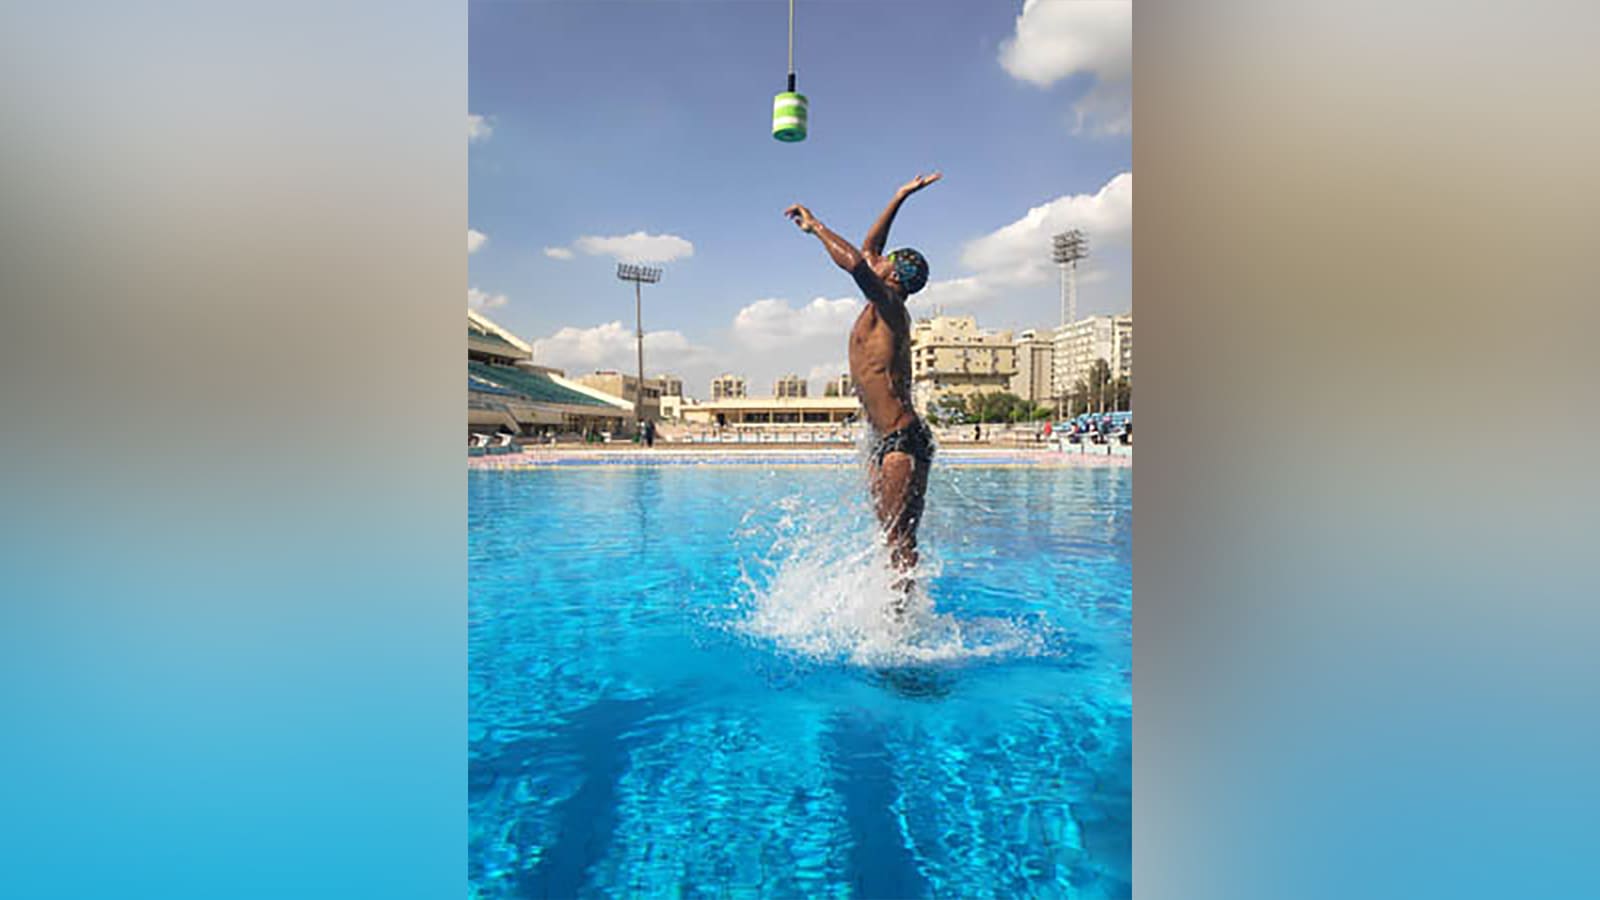 سباح مصري يحطم رقما قياسيا لأعلى قفزة خارج الماء في موسوعة "غينيس"